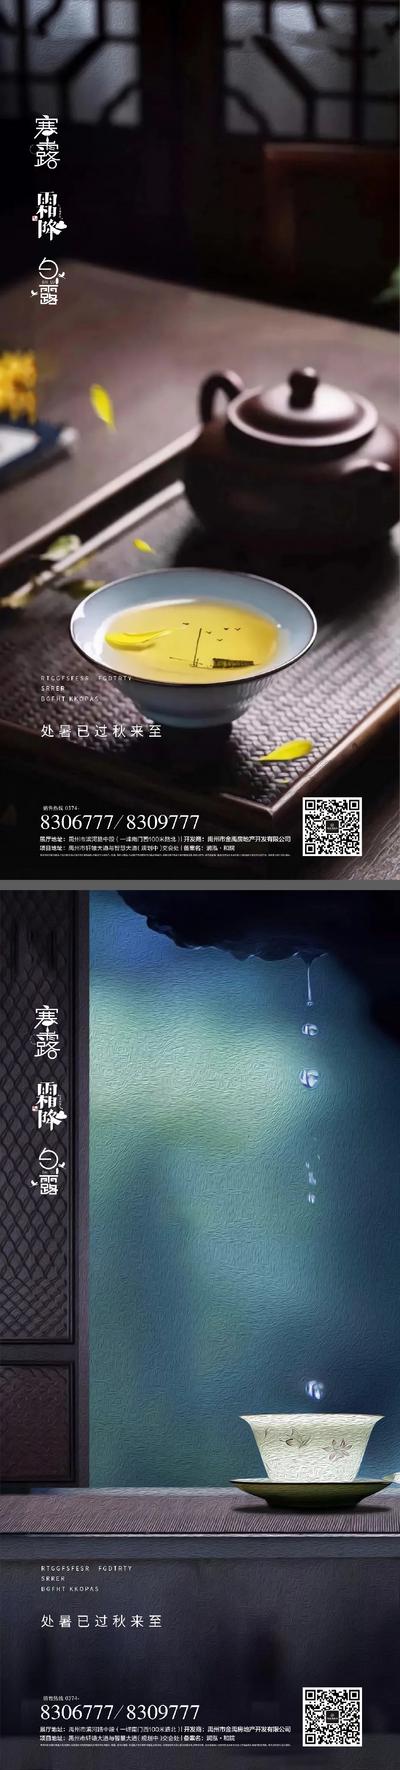 南门网 海报 二十四节气 白露 寒露 霜降 中式 茶